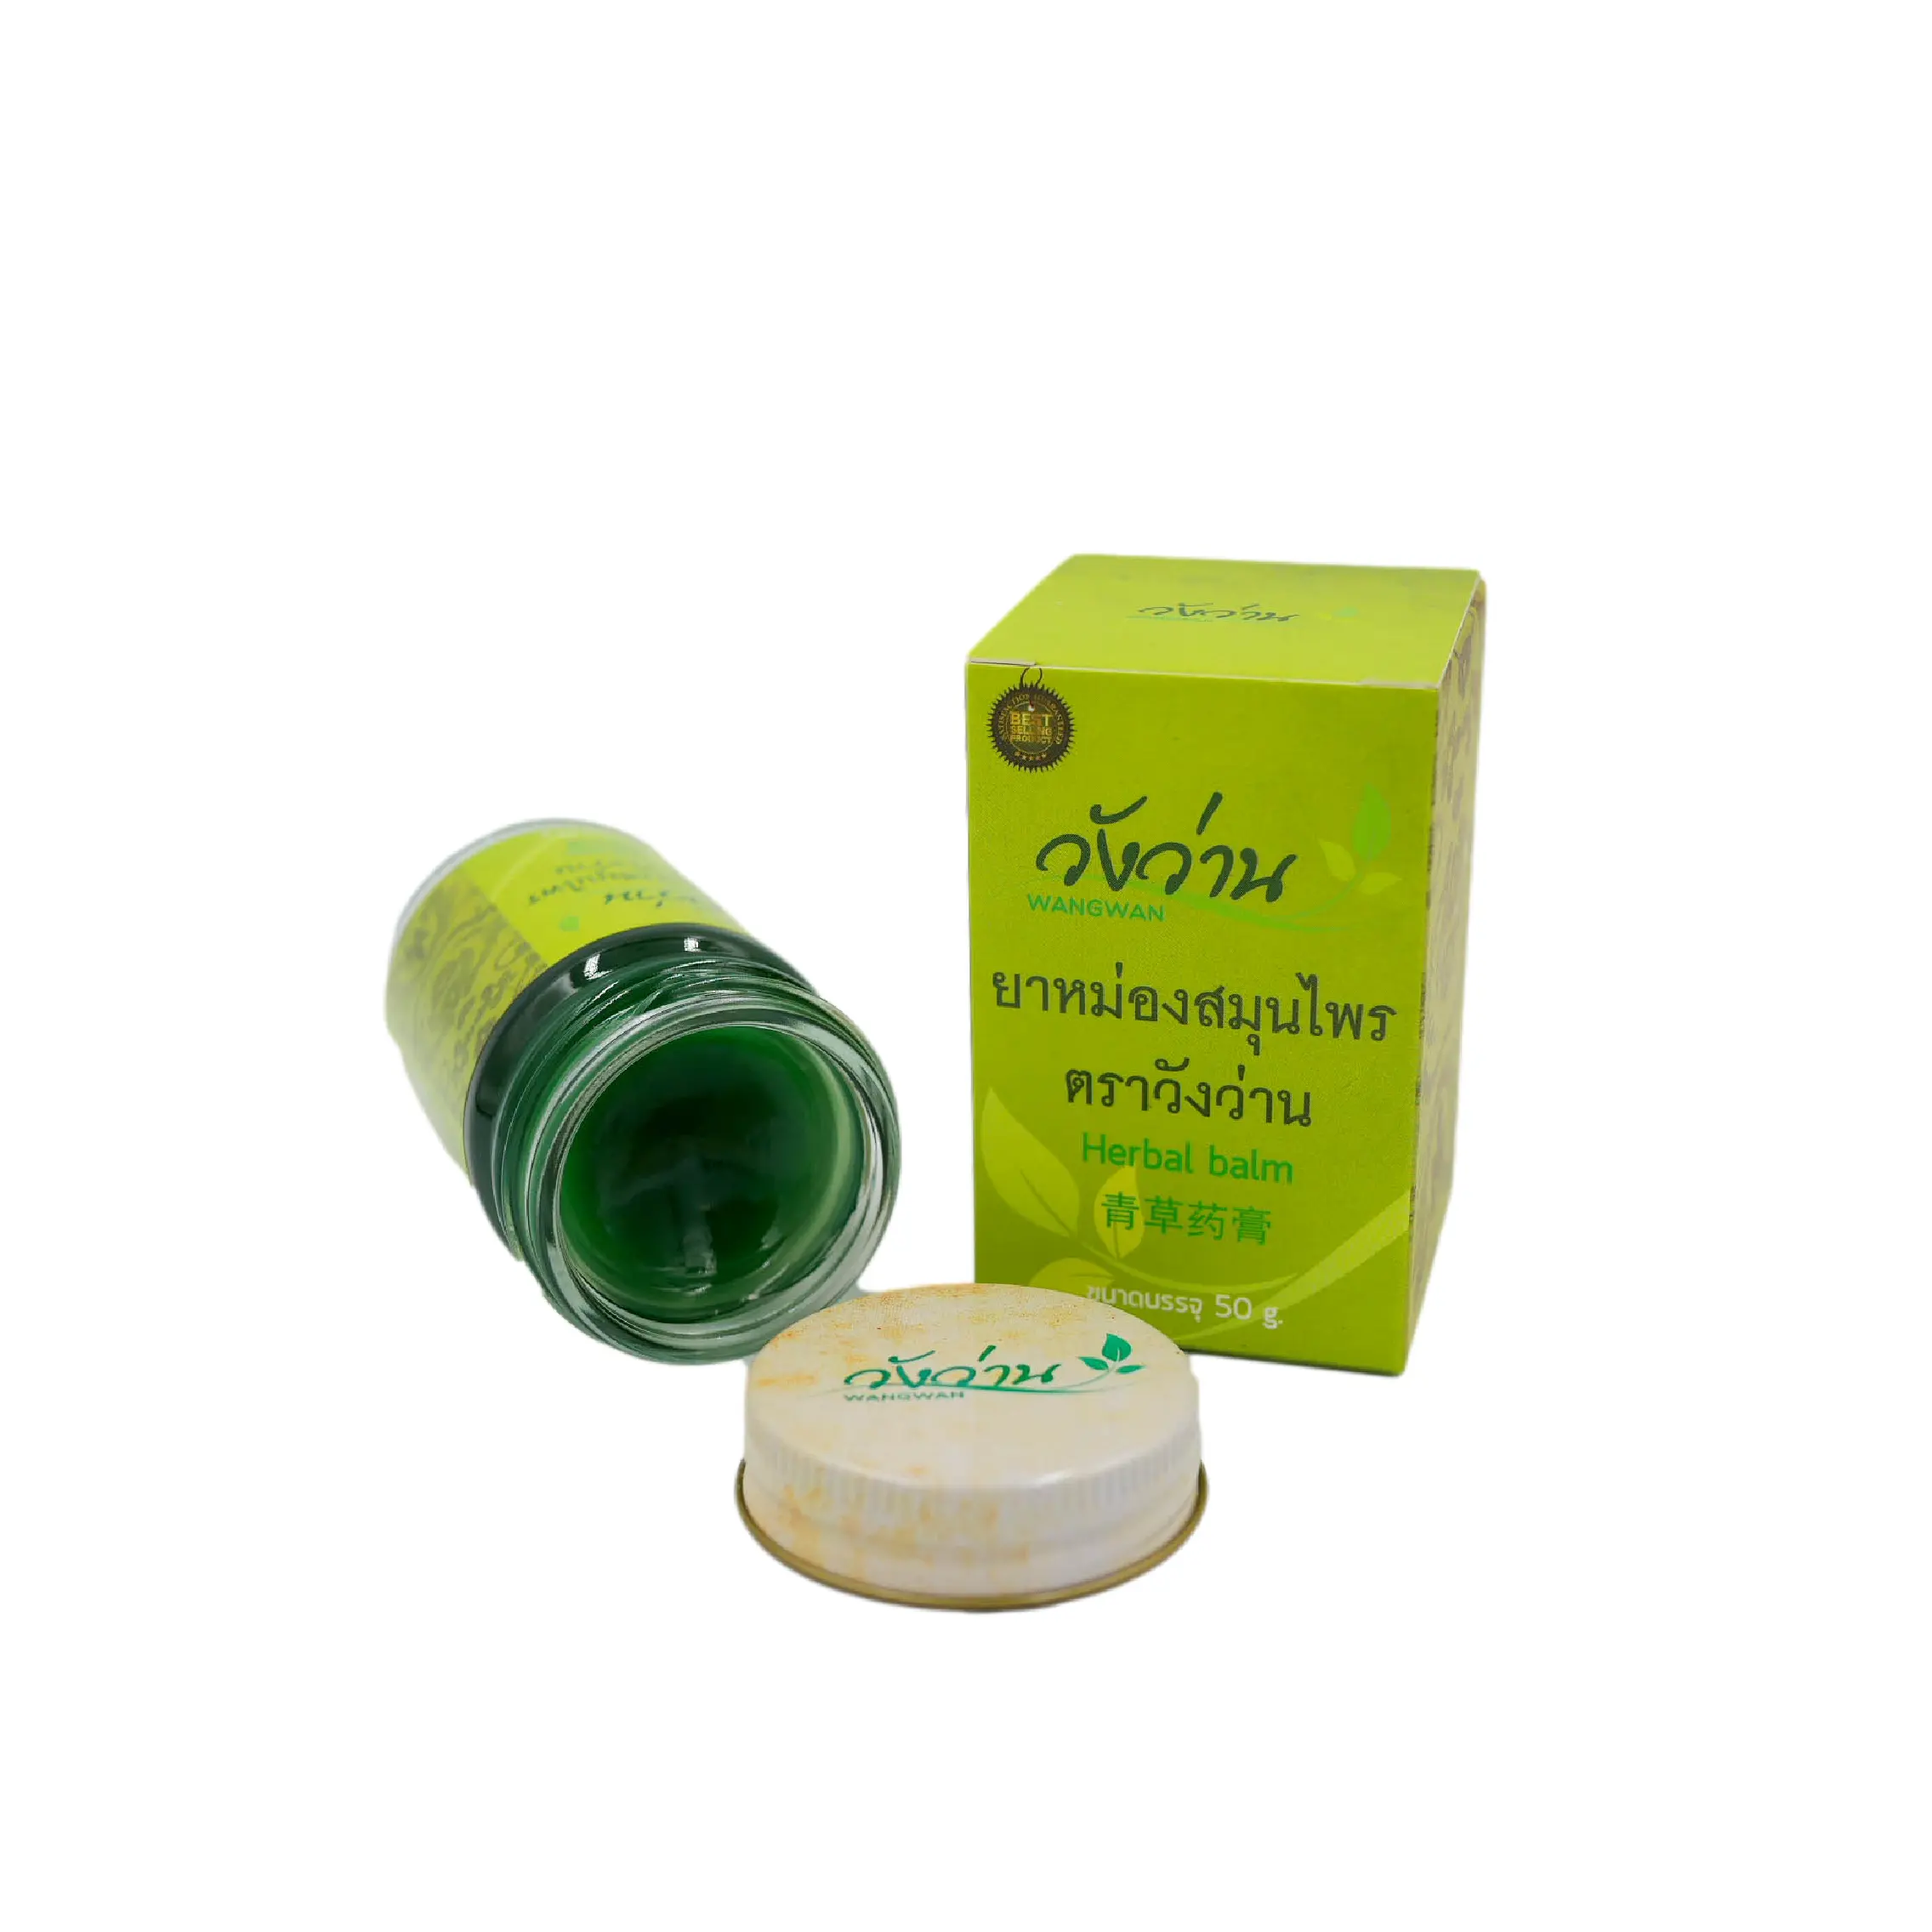 100% natürliche Kräuter Green Herbal Balm Wangwan Marke, die in Sicherheit und therapeut ischen Ergebnissen bekannt ist